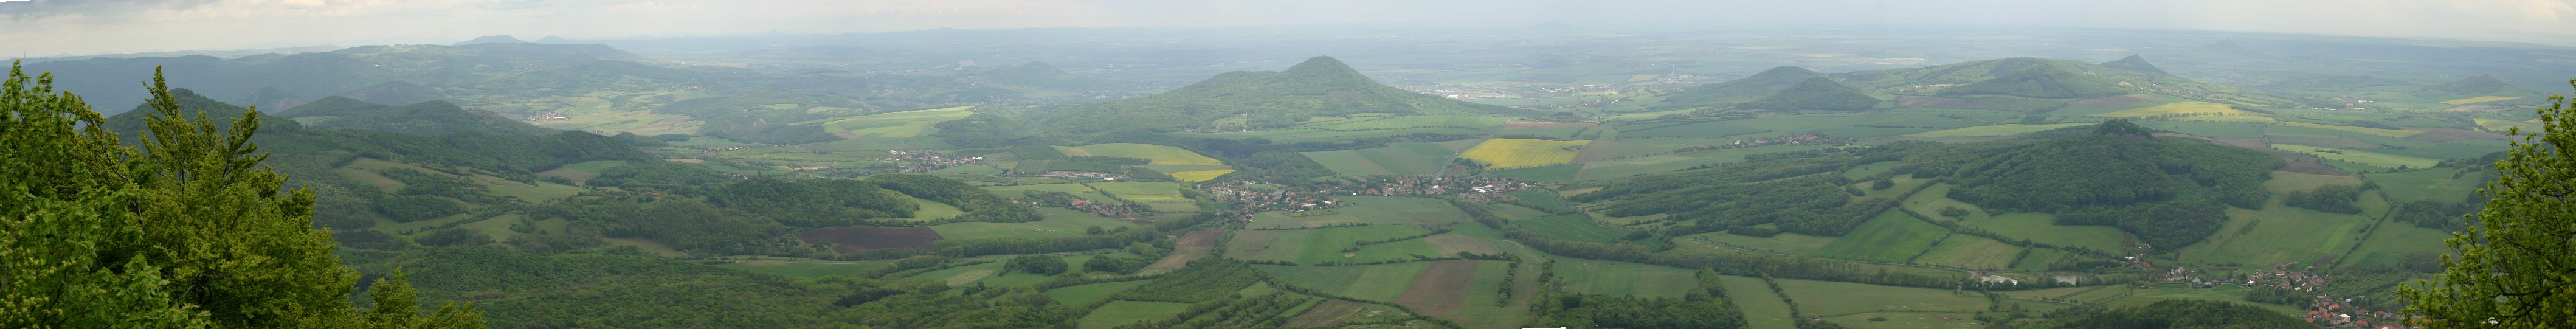 Panorama Milešovka lowres.jpg